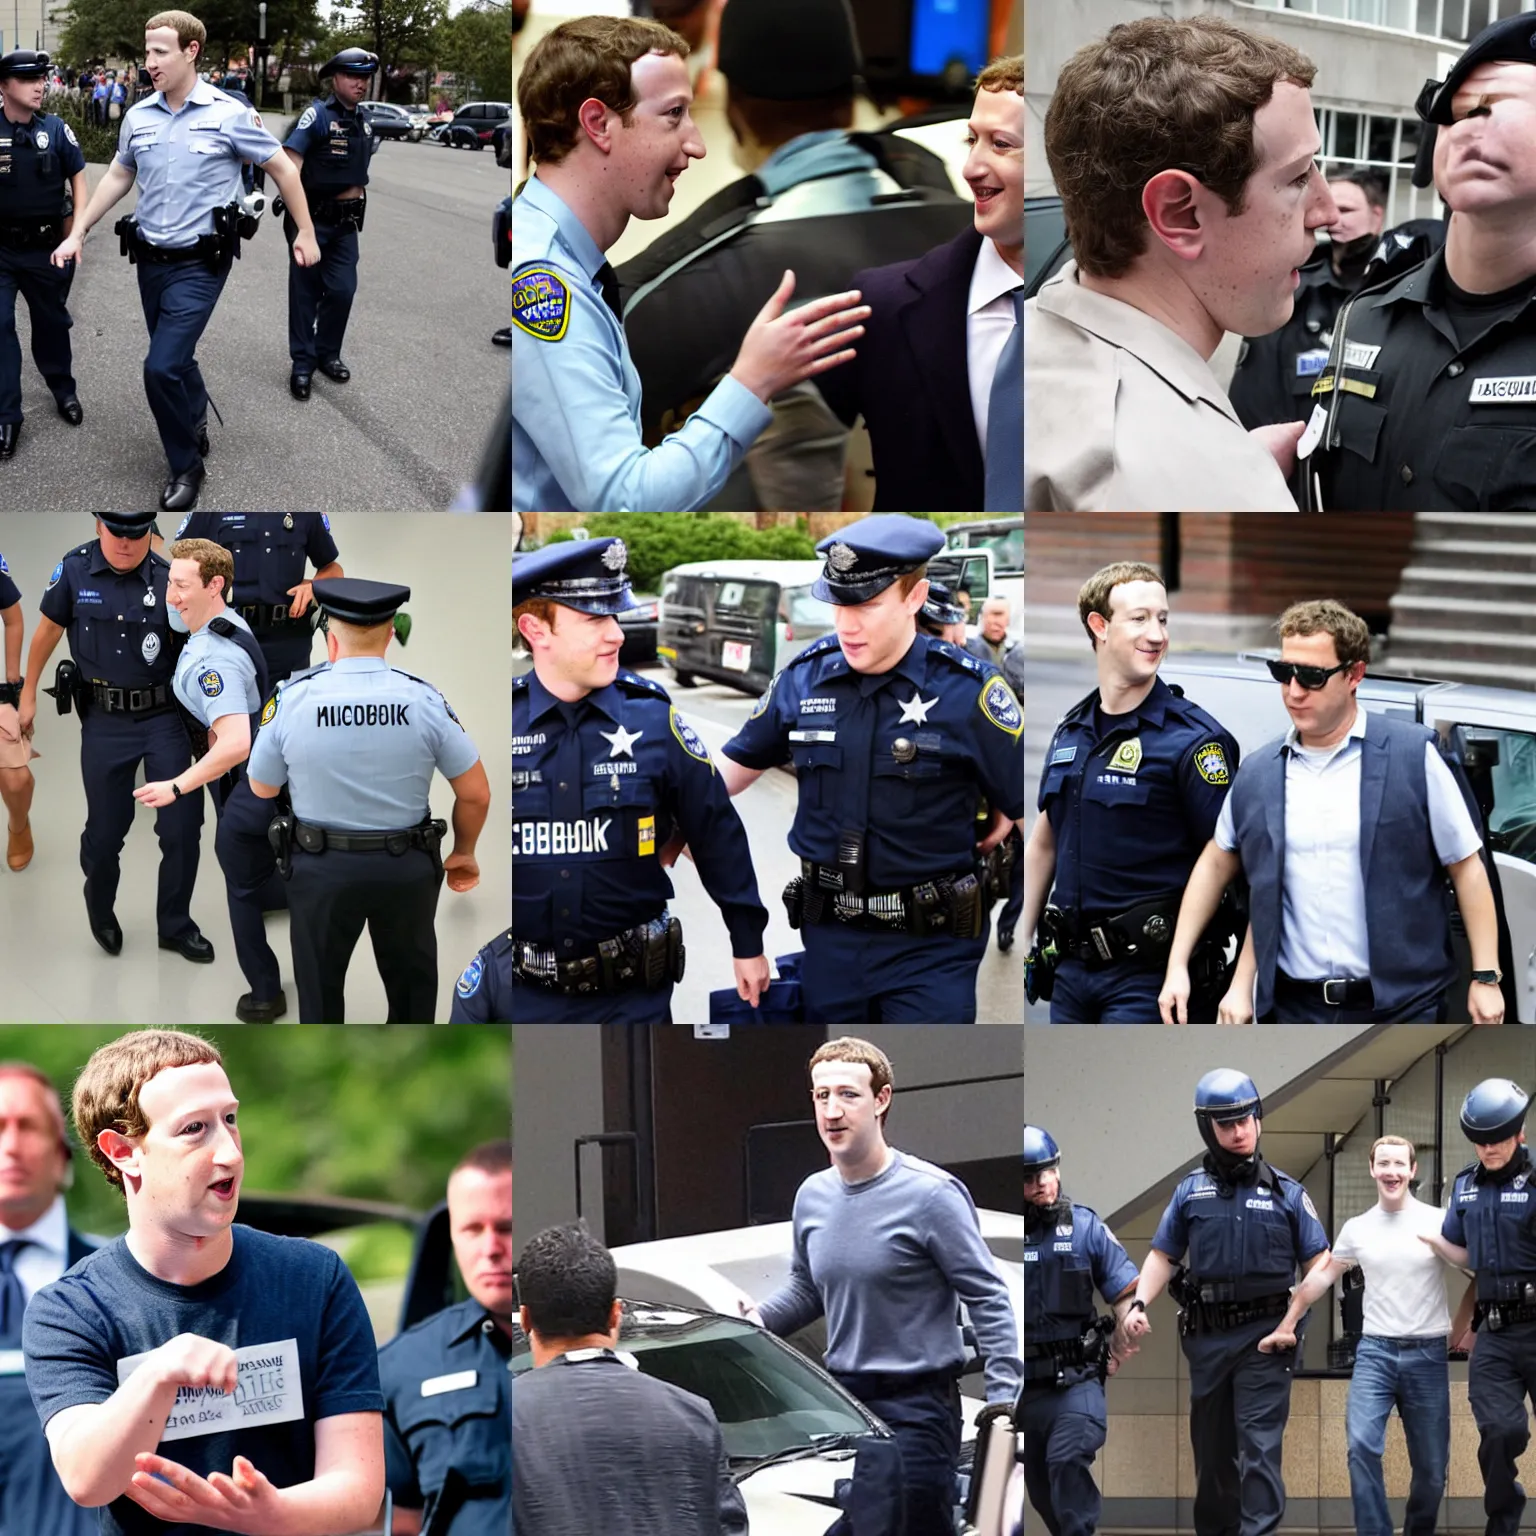 Prompt: mark zuckerberg being arrested